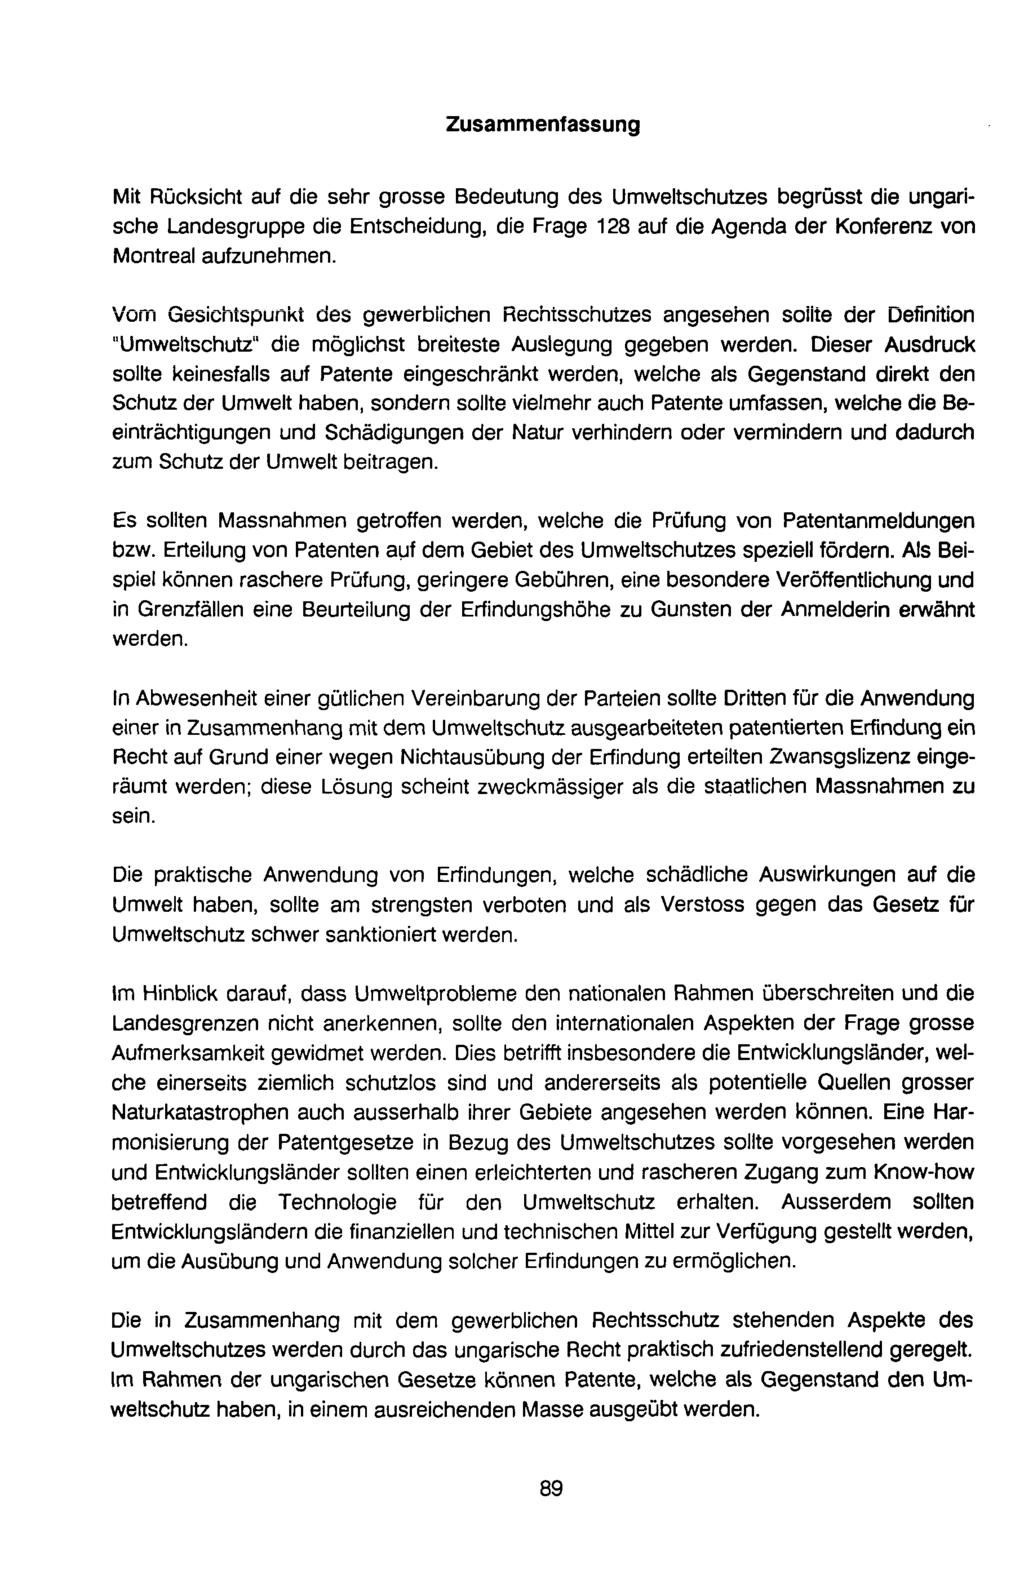 Zusammenfassung Mit Rücksicht auf die sehr grosse Bedeutung des Umweltschutzes begrüsst die ungarische Landesgruppe die Entscheidung, die Frage 128 auf die Agenda der Konferenz von Montreal